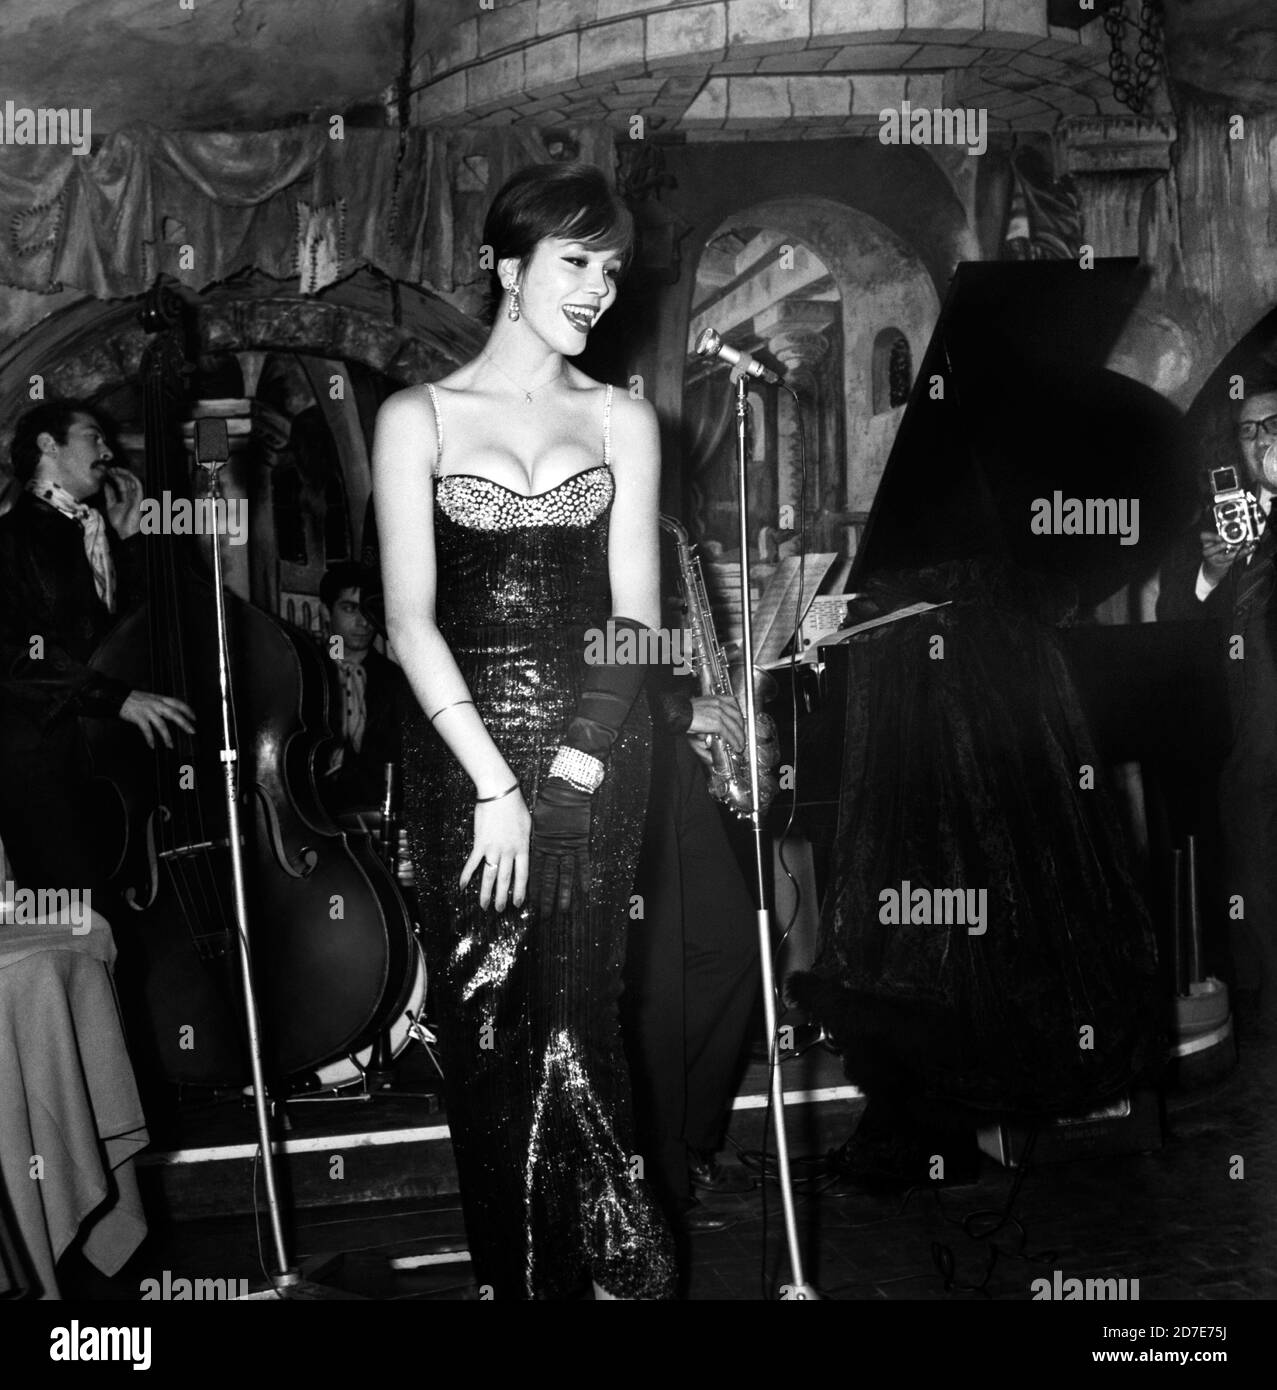 Amanda Lear performs in a club, Rome, 1960s. --- Amanda Lear si esibisce in un locale, Roma, Anni 60. Stock Photo